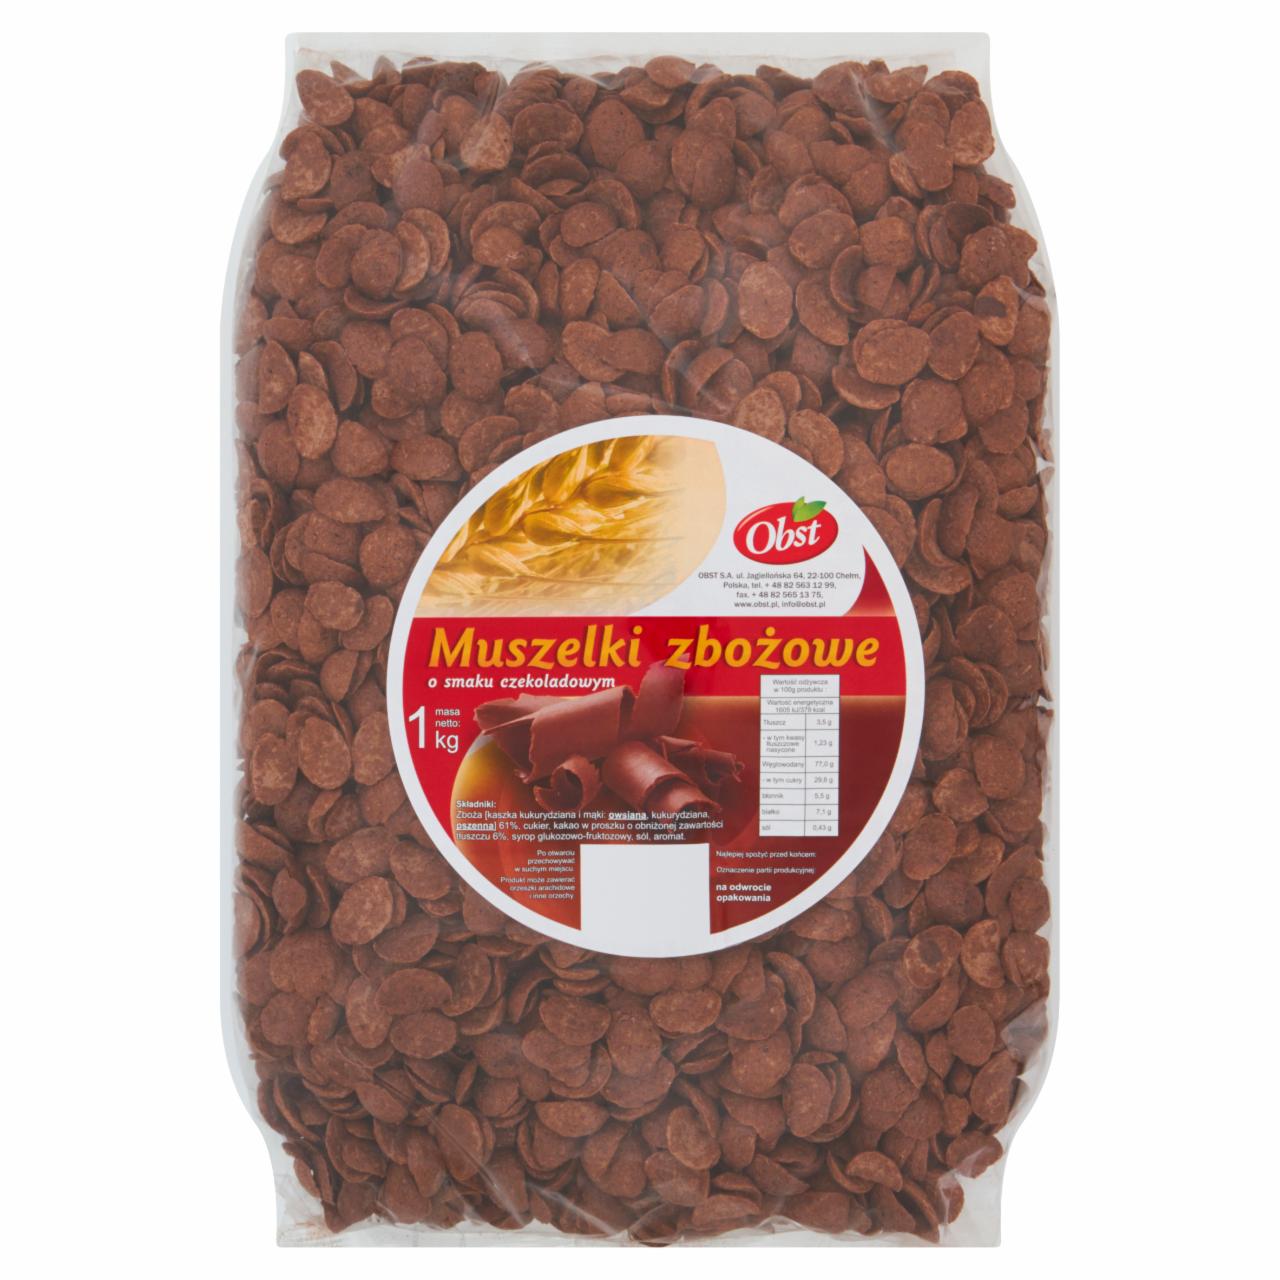 Zdjęcia - Obst Muszelki zbożowe o smaku czekoladowym 1 kg